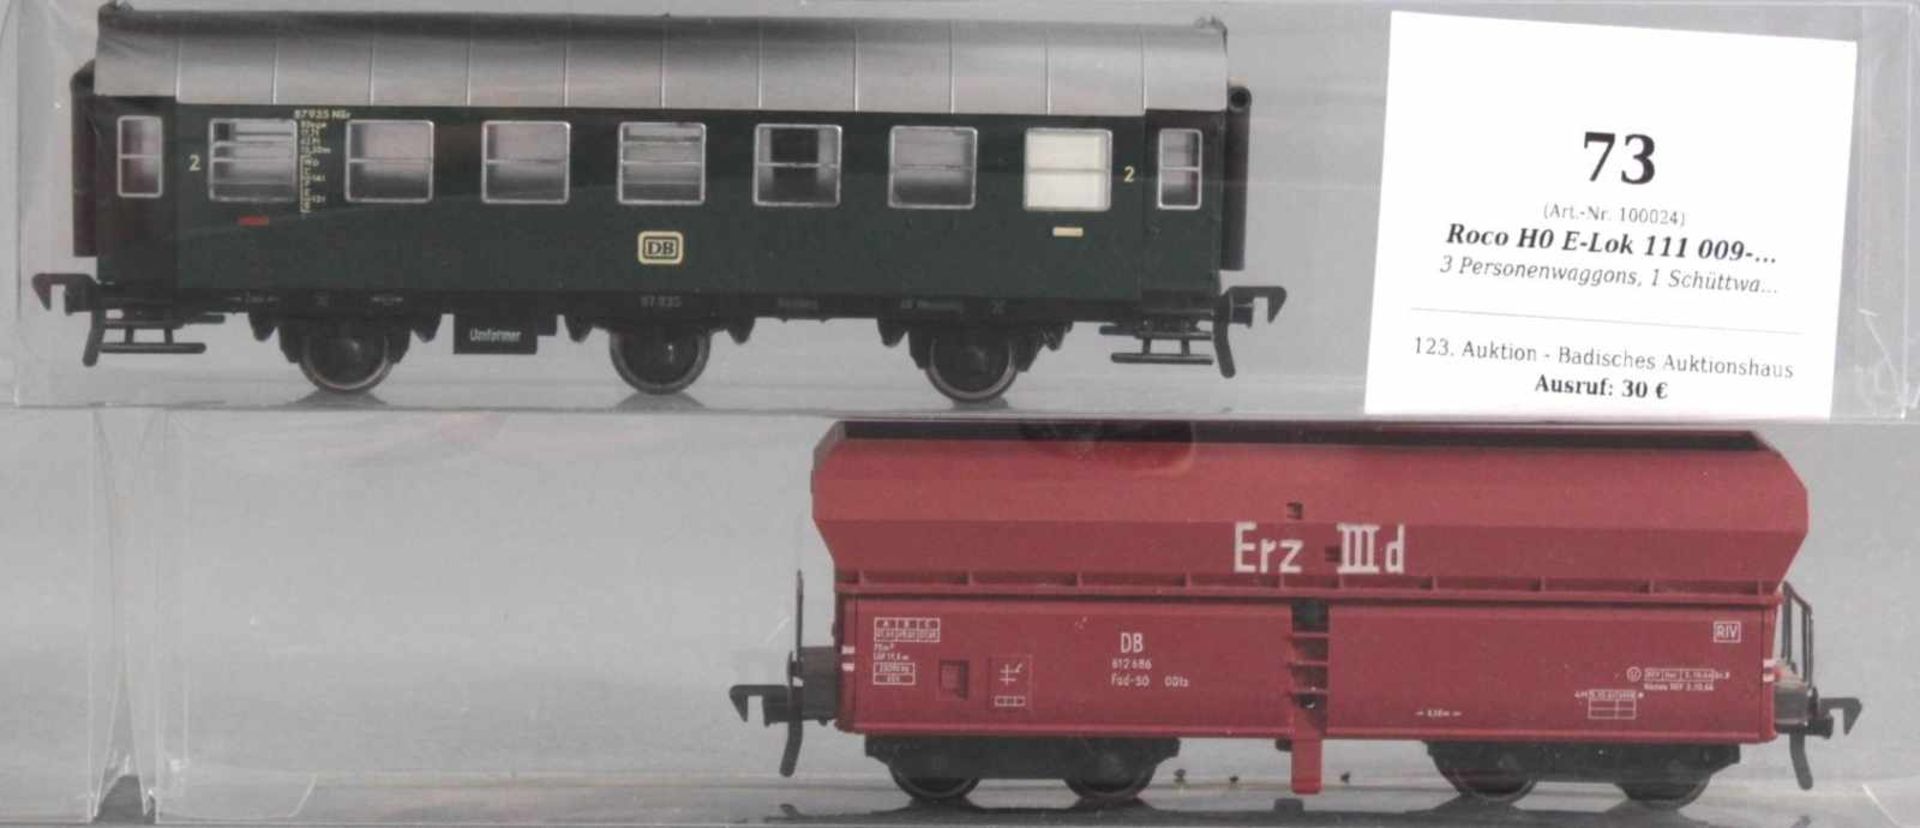 Roco H0 E-Lok 111 009-7 mit 6 Fleischmann Waggons3 Personenwaggons, 1 Schüttwaggon, und 2 offene - Image 4 of 4